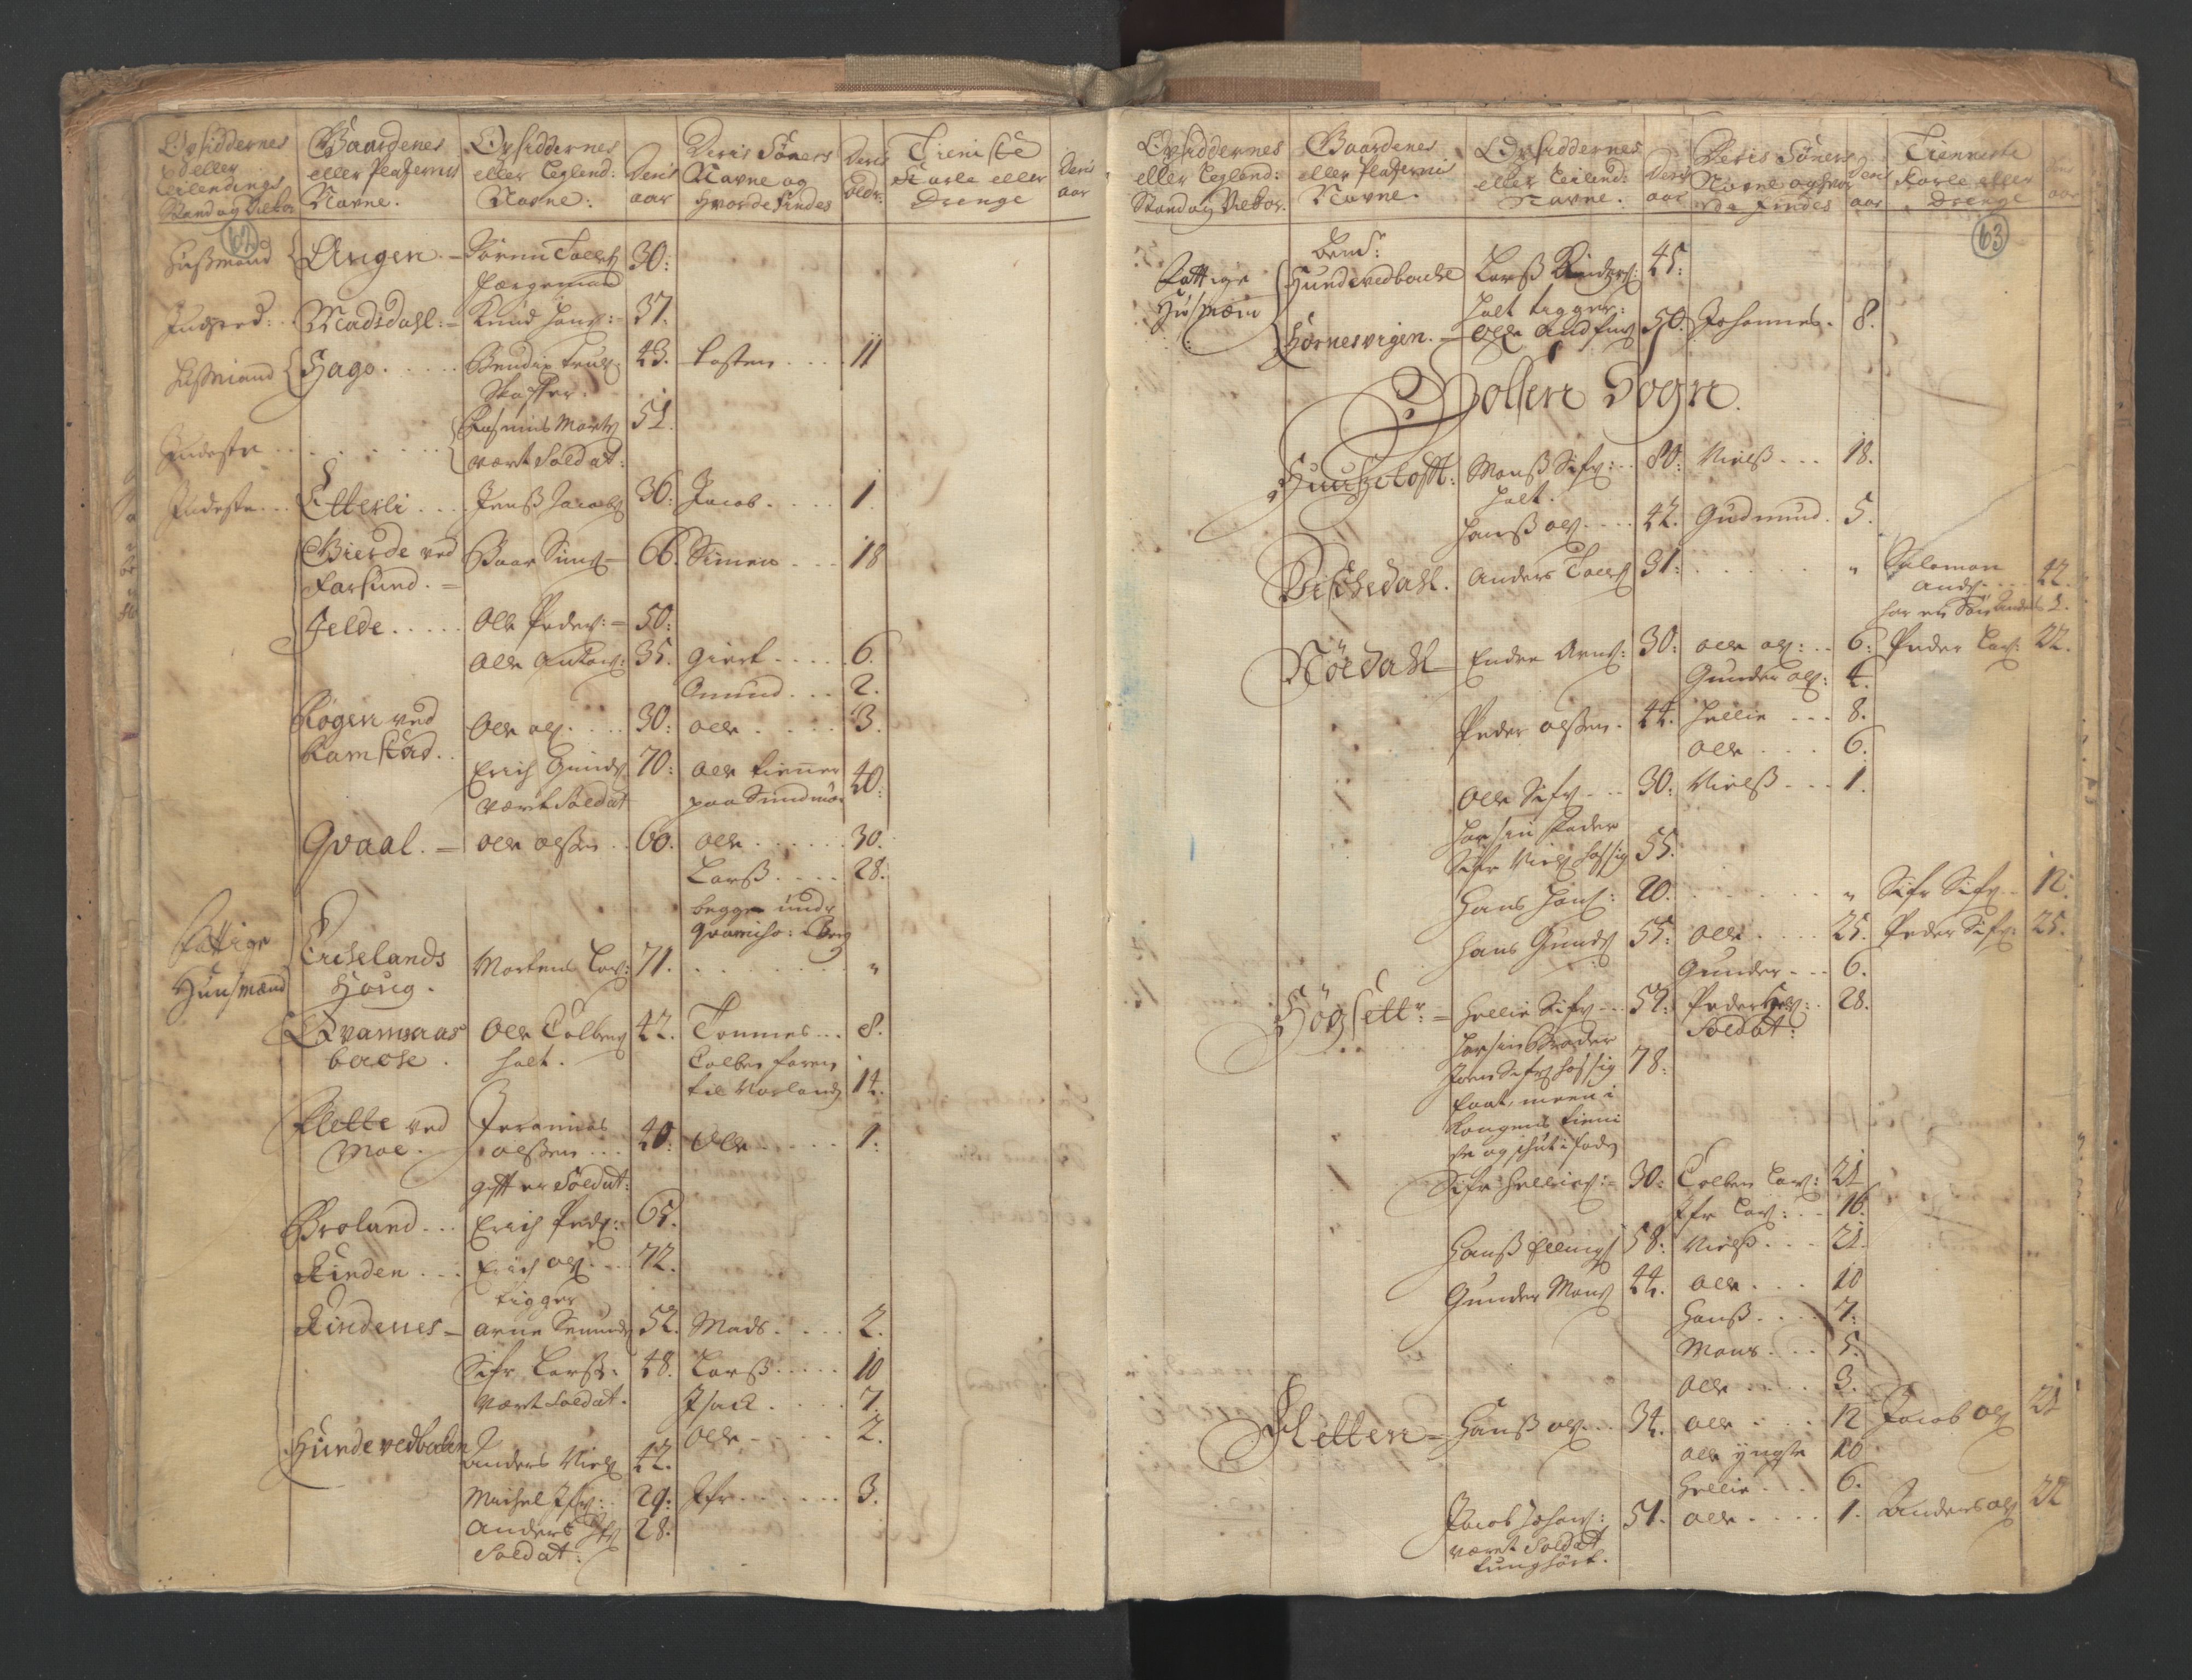 RA, Census (manntall) 1701, no. 9: Sunnfjord fogderi, Nordfjord fogderi and Svanø birk, 1701, p. 62-63